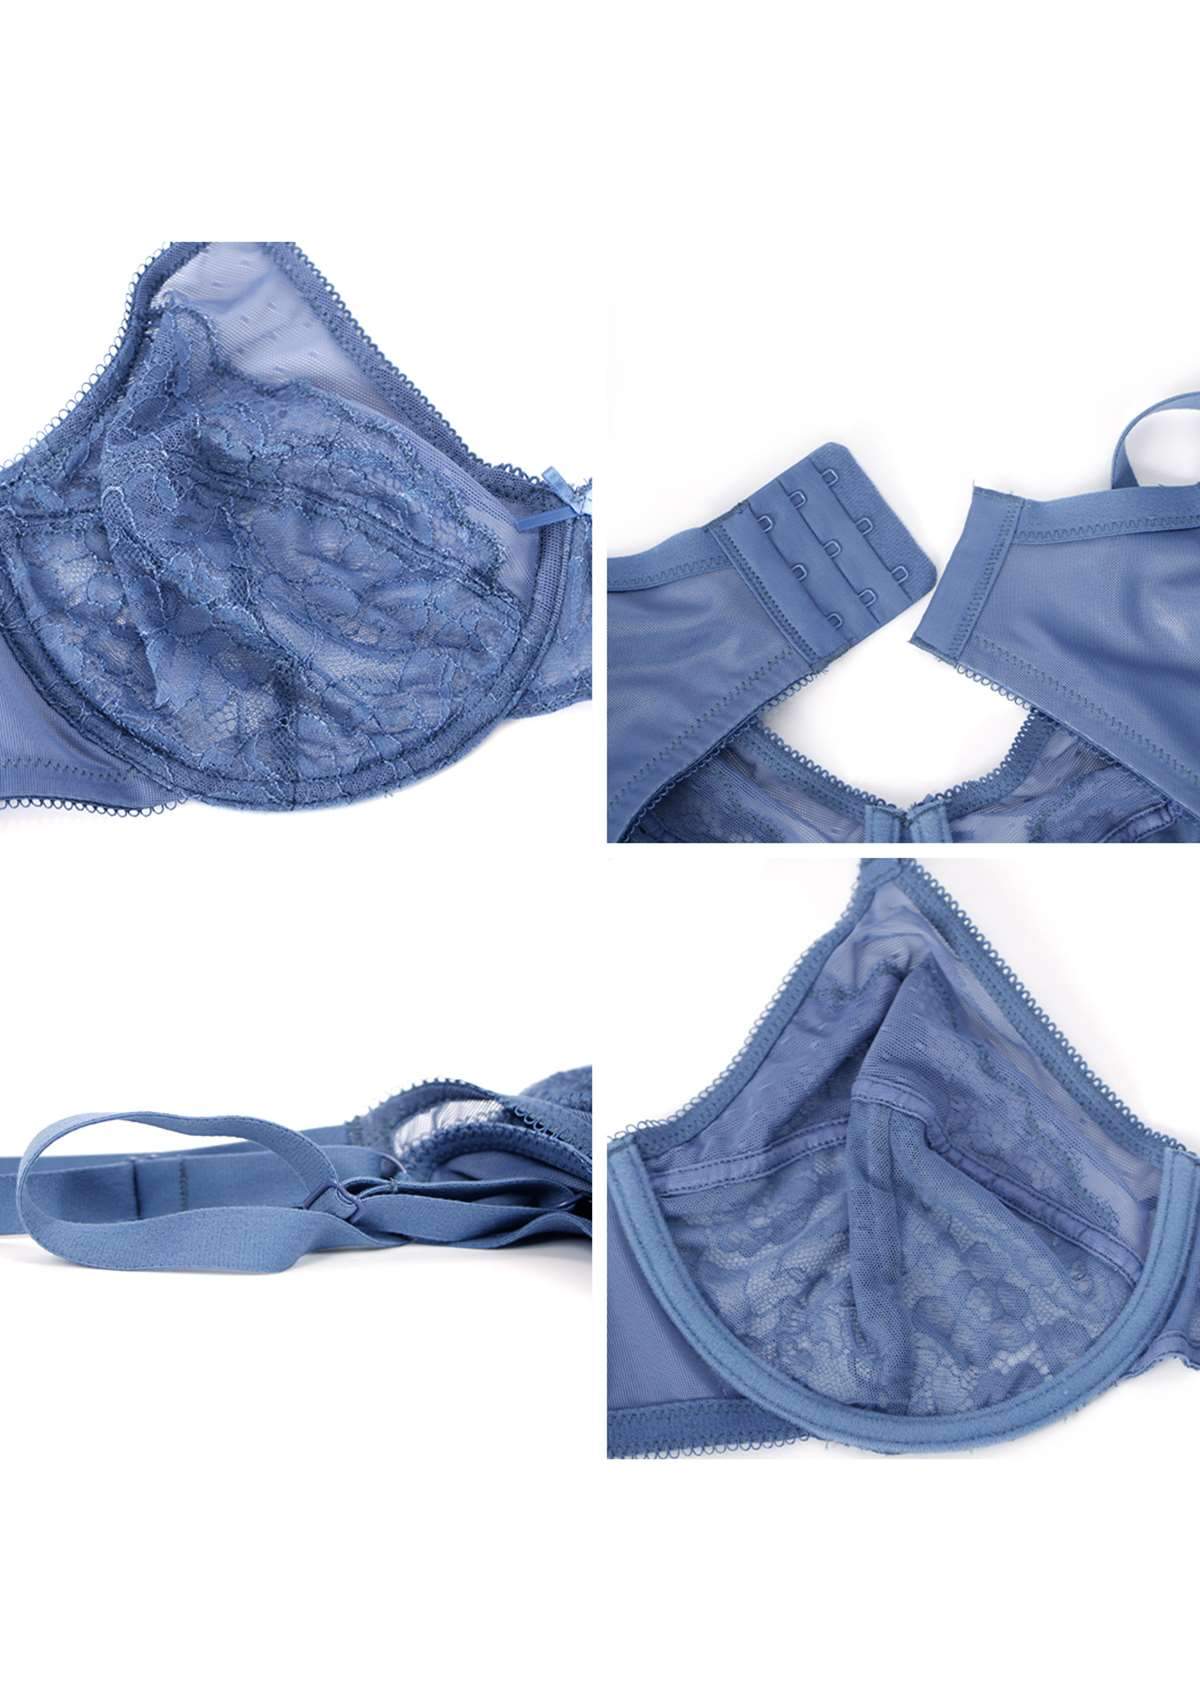 HSIA Enchante Underwire Lace Mesh Bra: Unlined Bra For Plus Size - Denim Blue / 36 / C